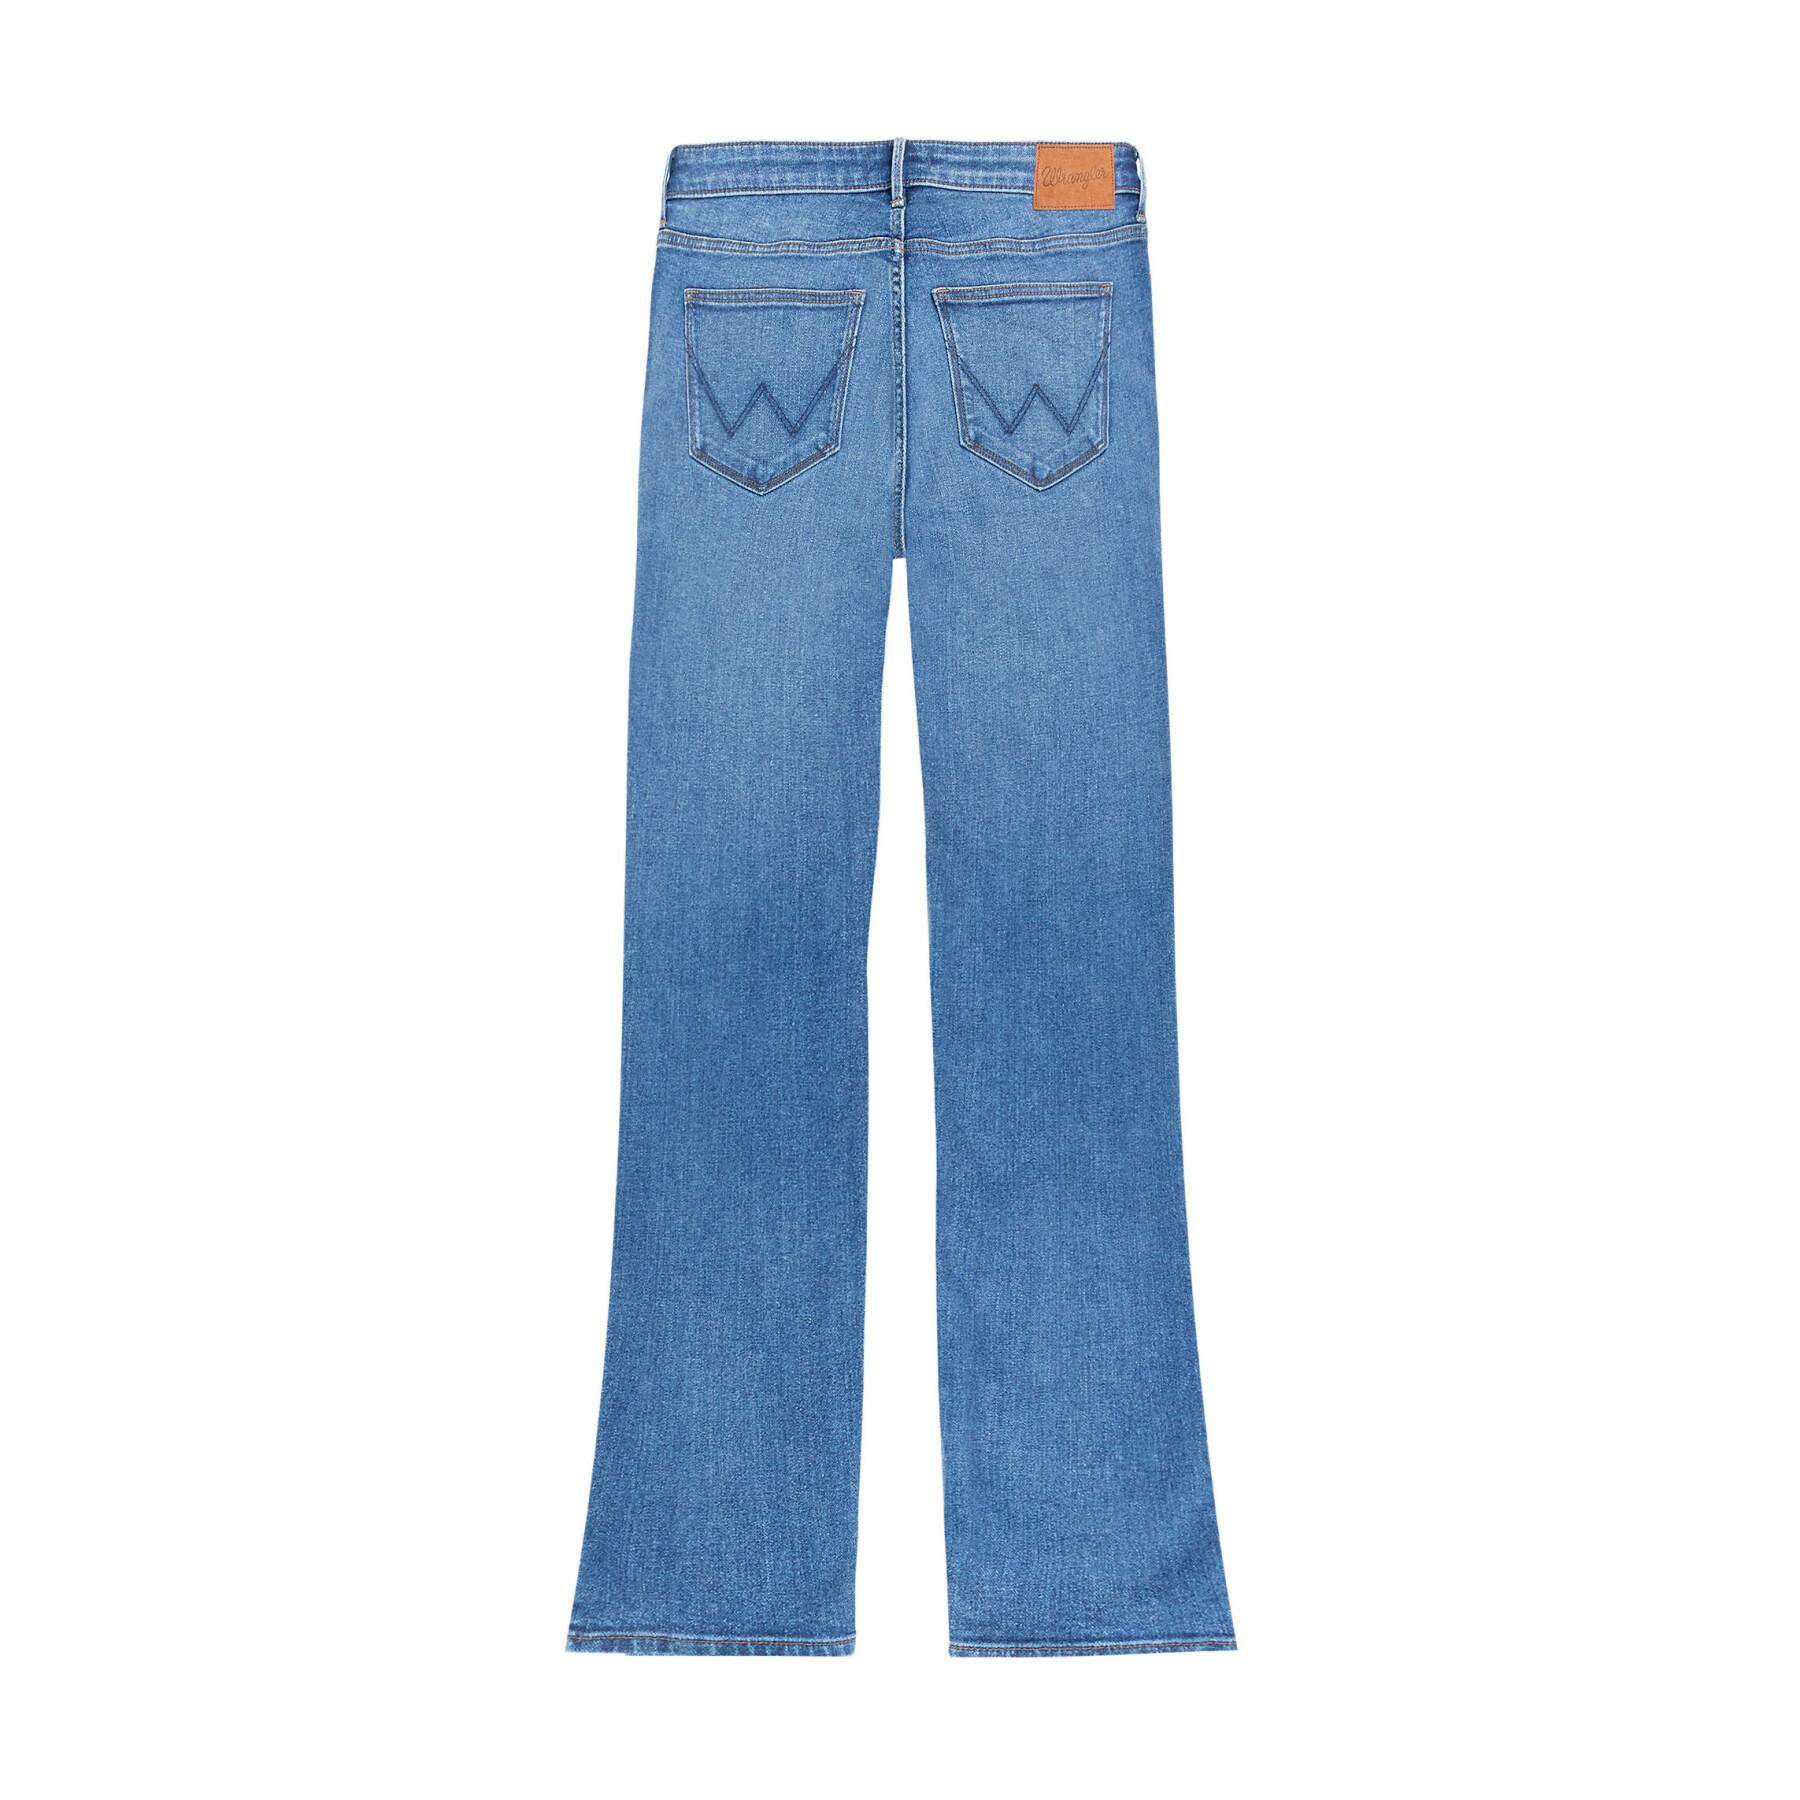 Jeans woman Wrangler Bootcut